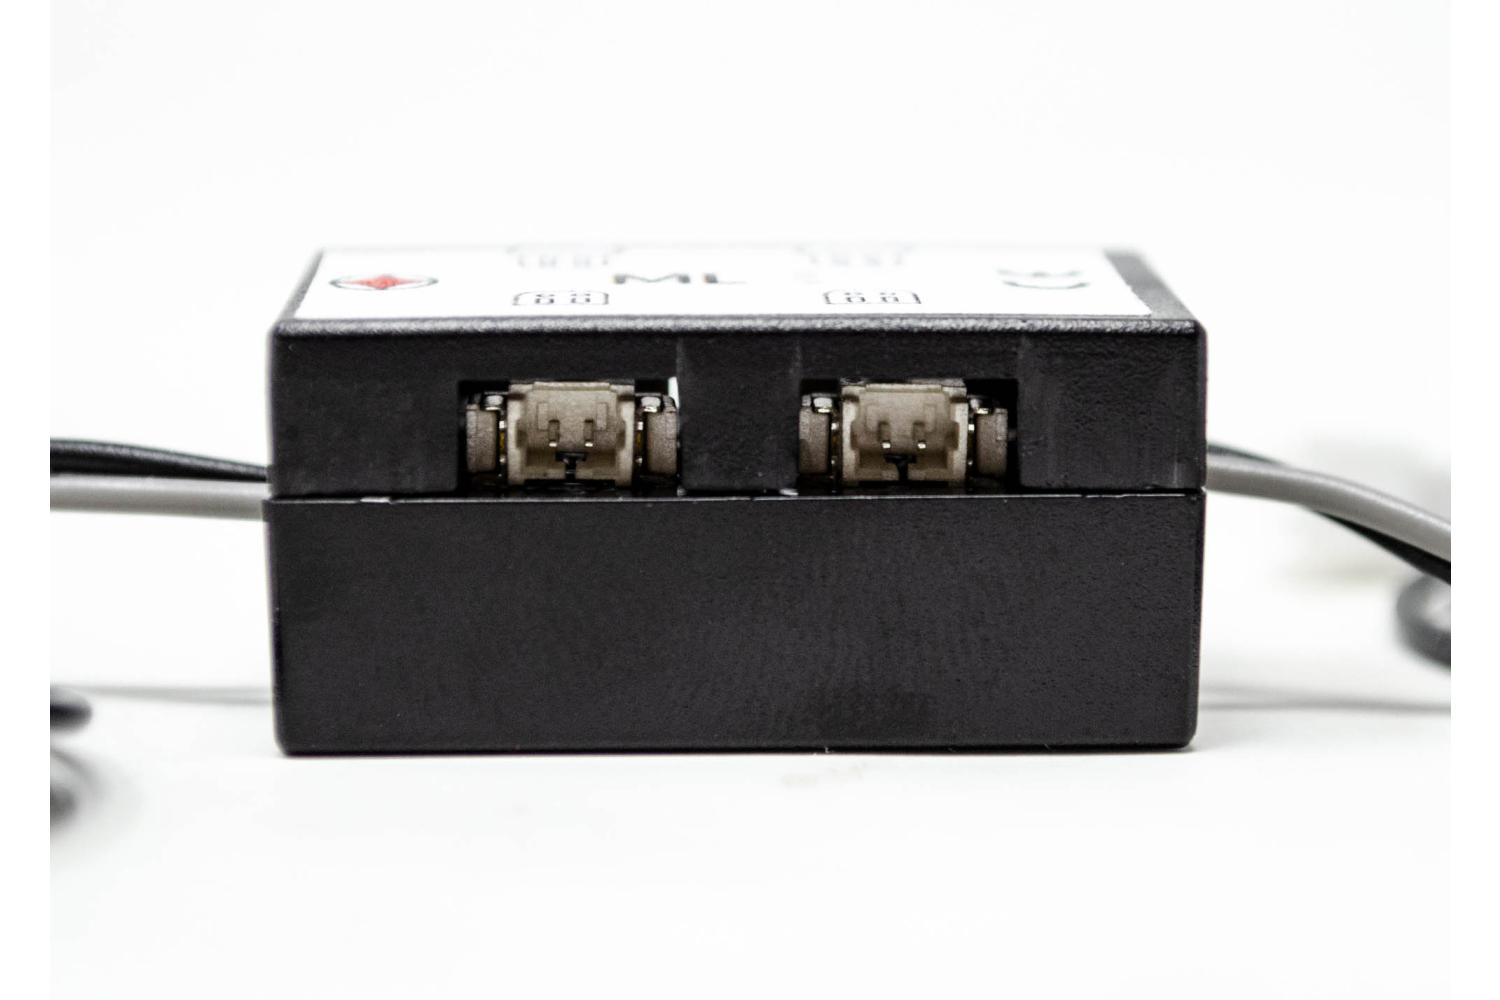  ML2.5 - Luci Case MLS - Sistema Miniaturizzato